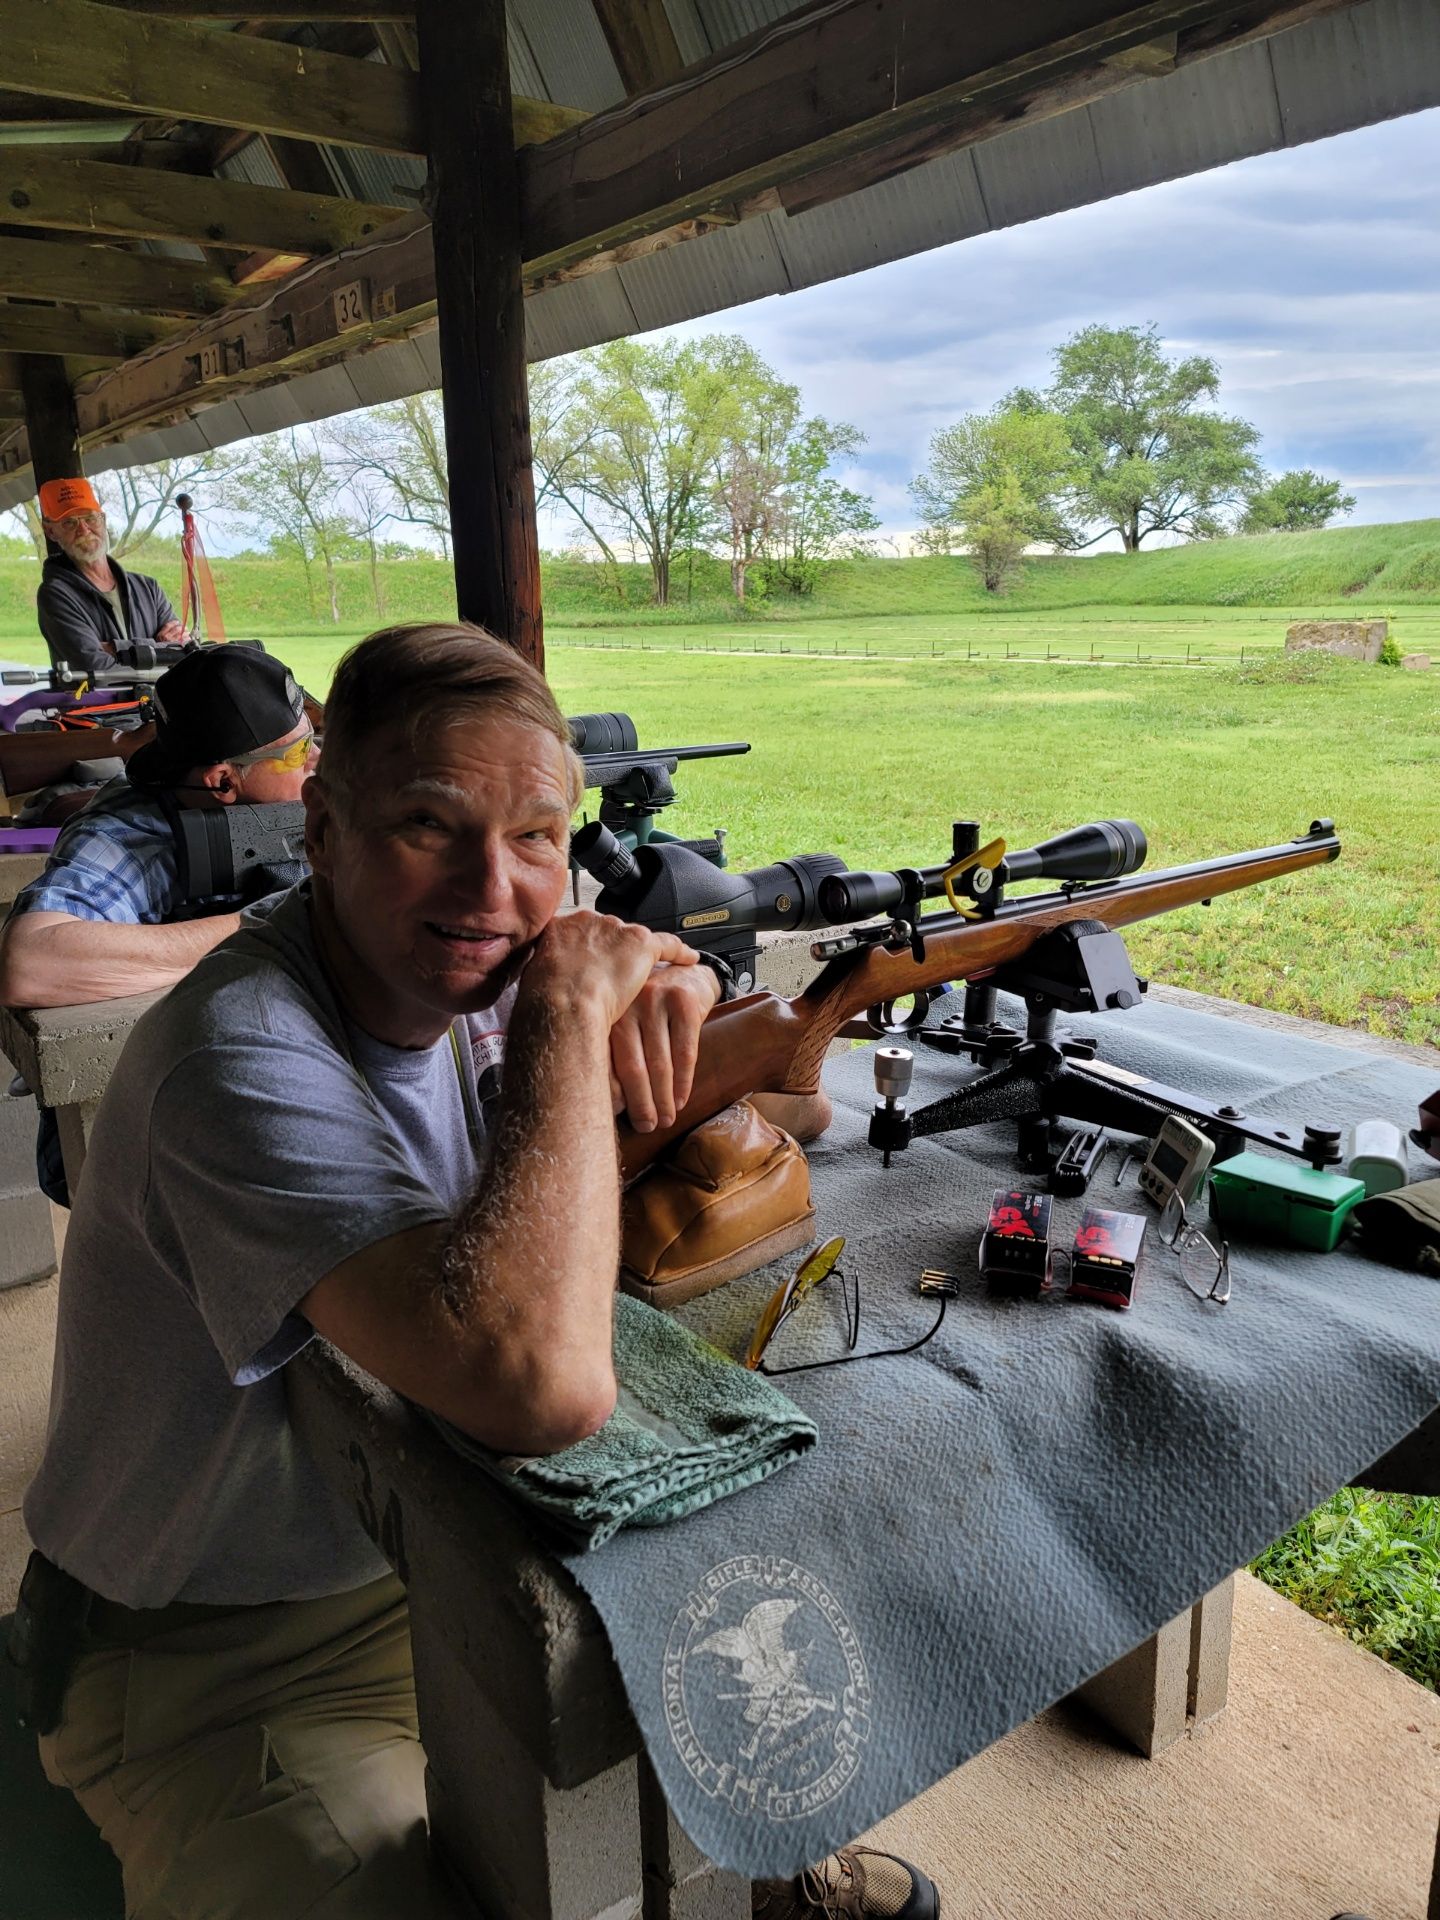 man in gray shirt posing at gun range with rifle